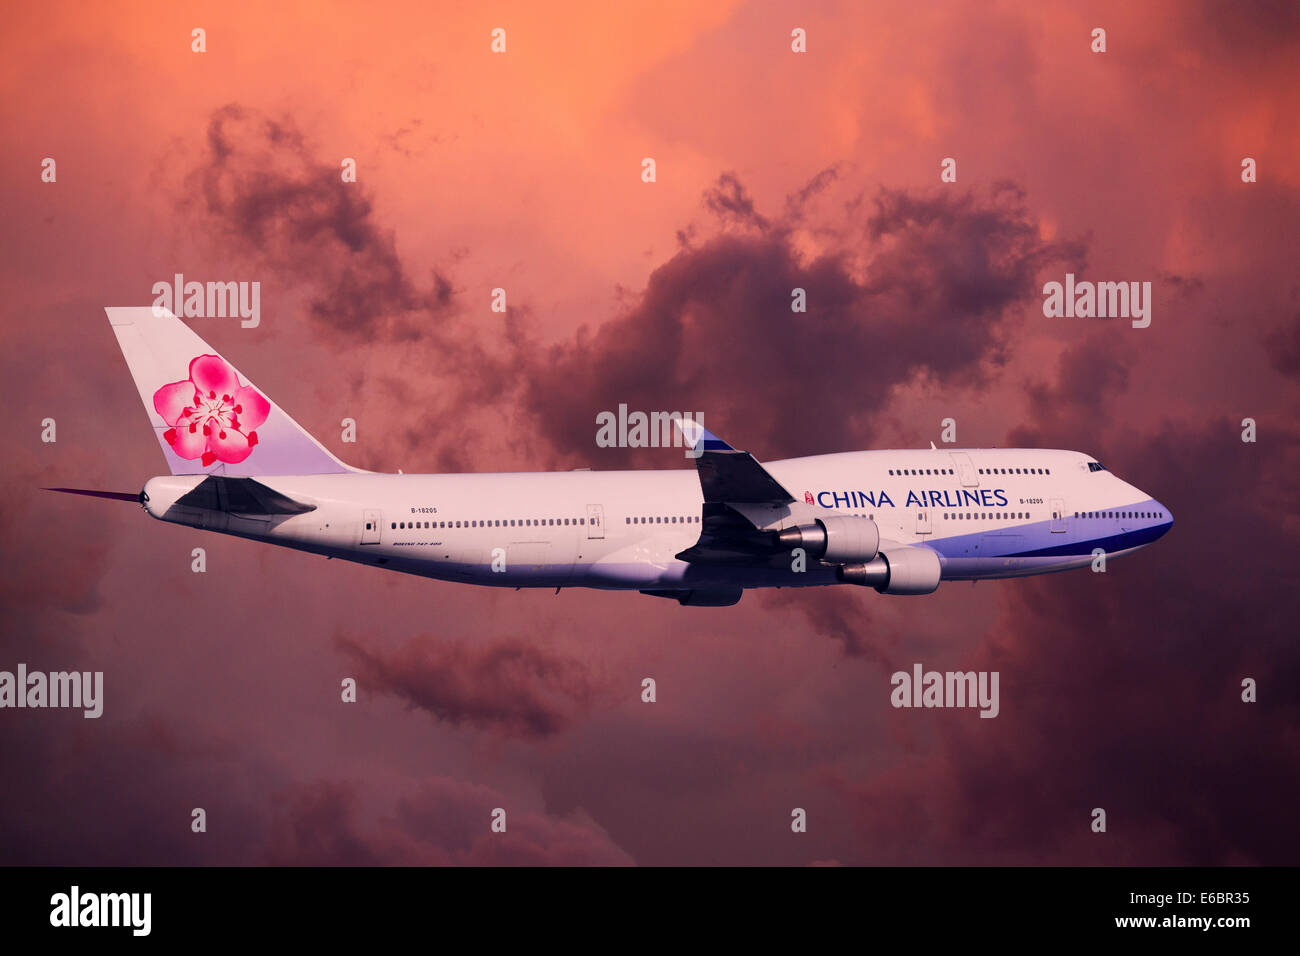 China Airlines Boeing 747-409 en vol pendant un orage Banque D'Images